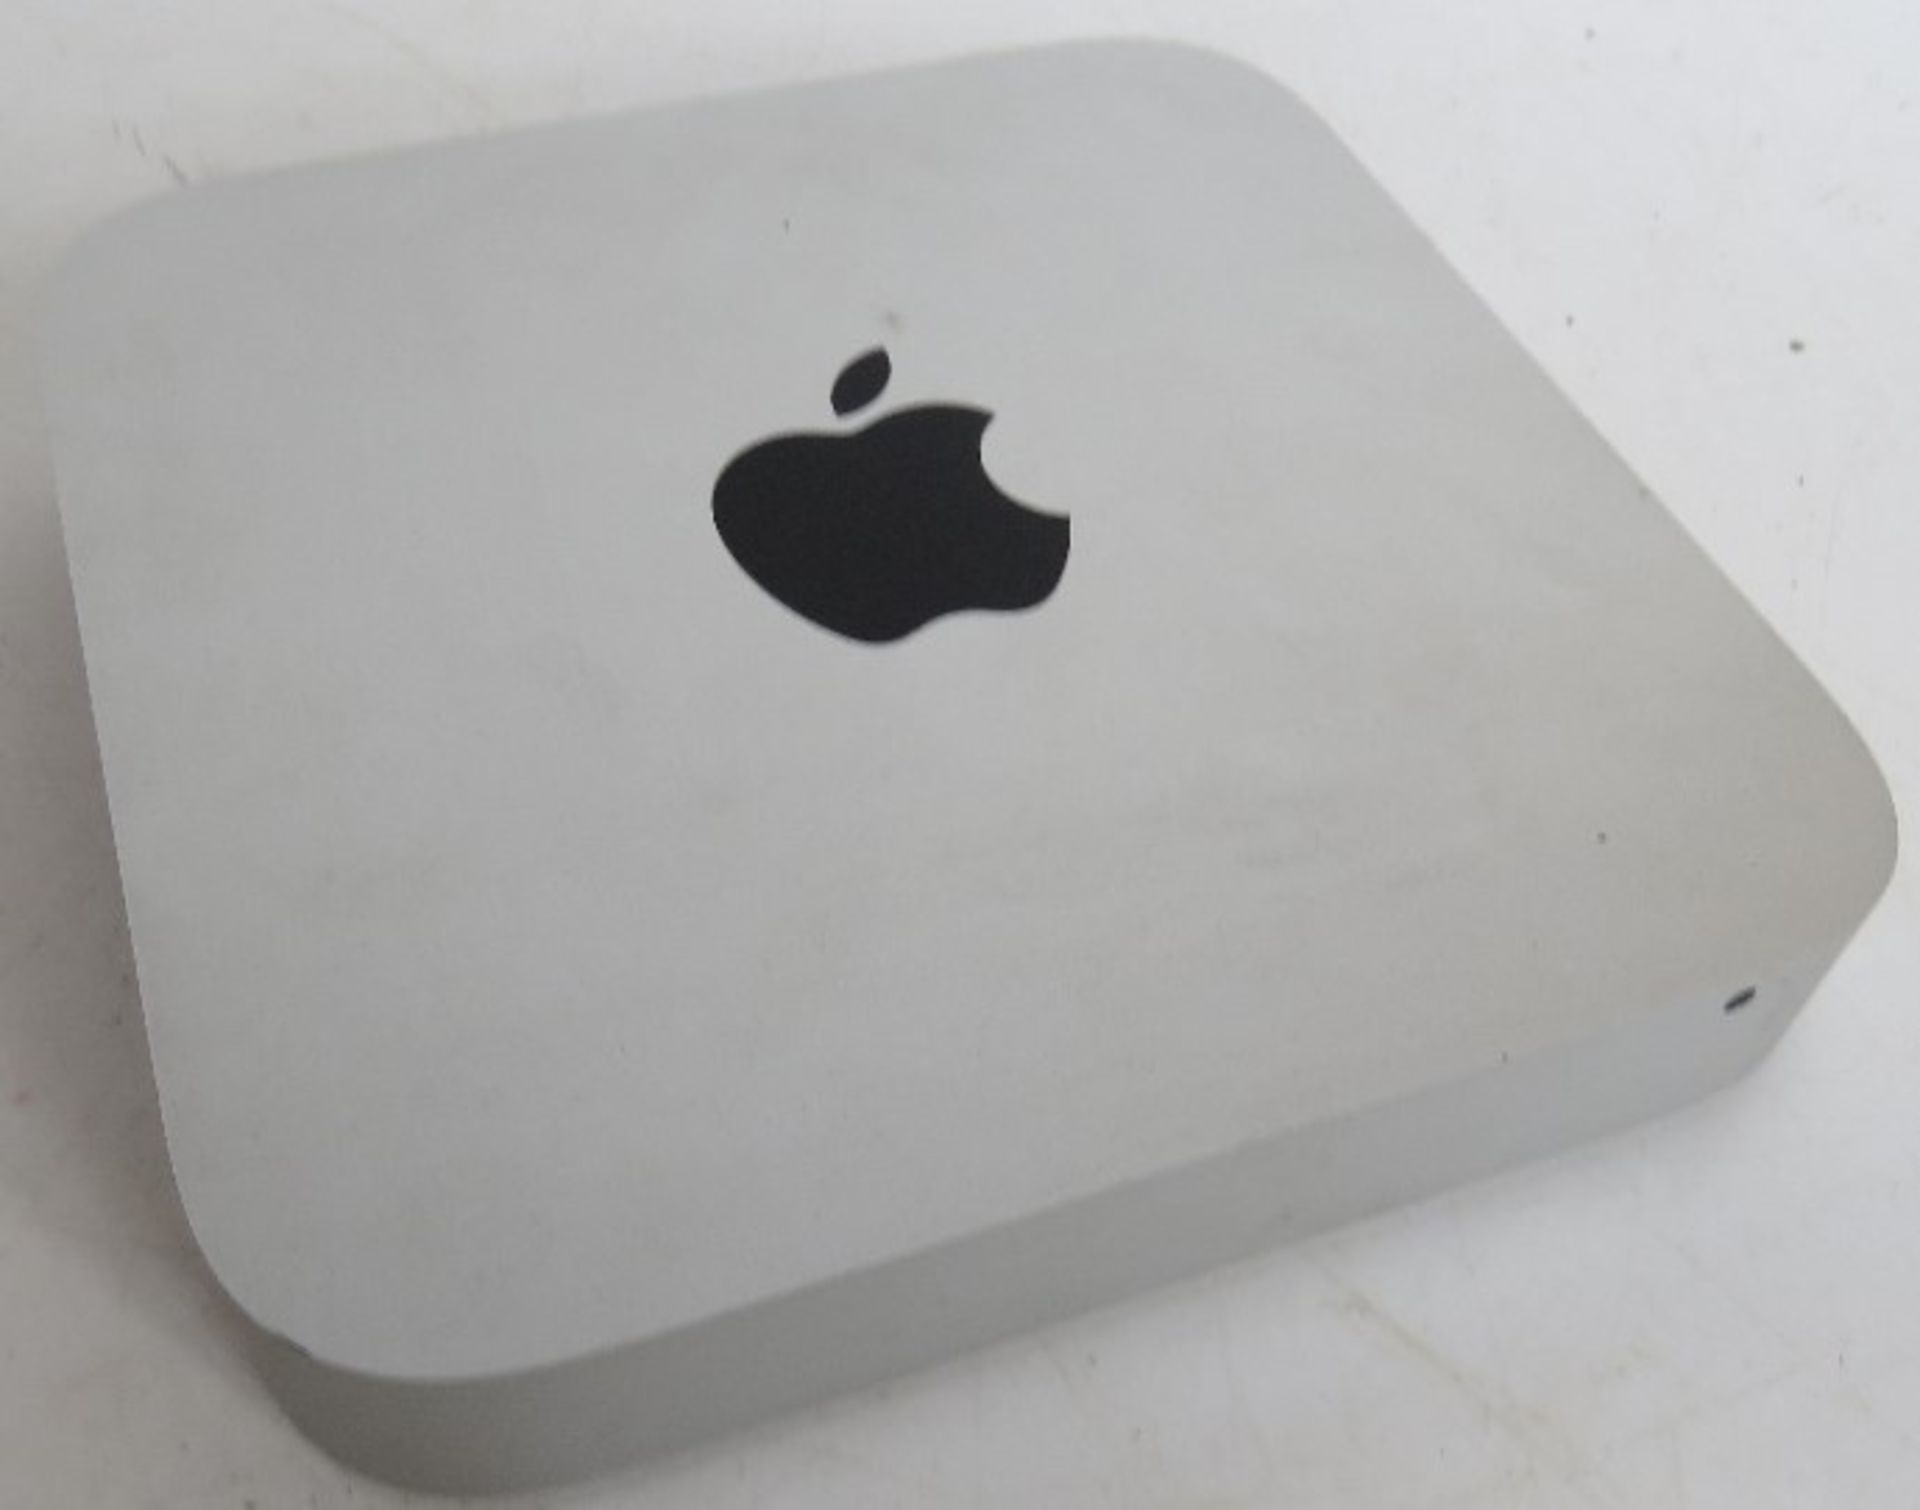 An Apple Mac Mini. No cables.